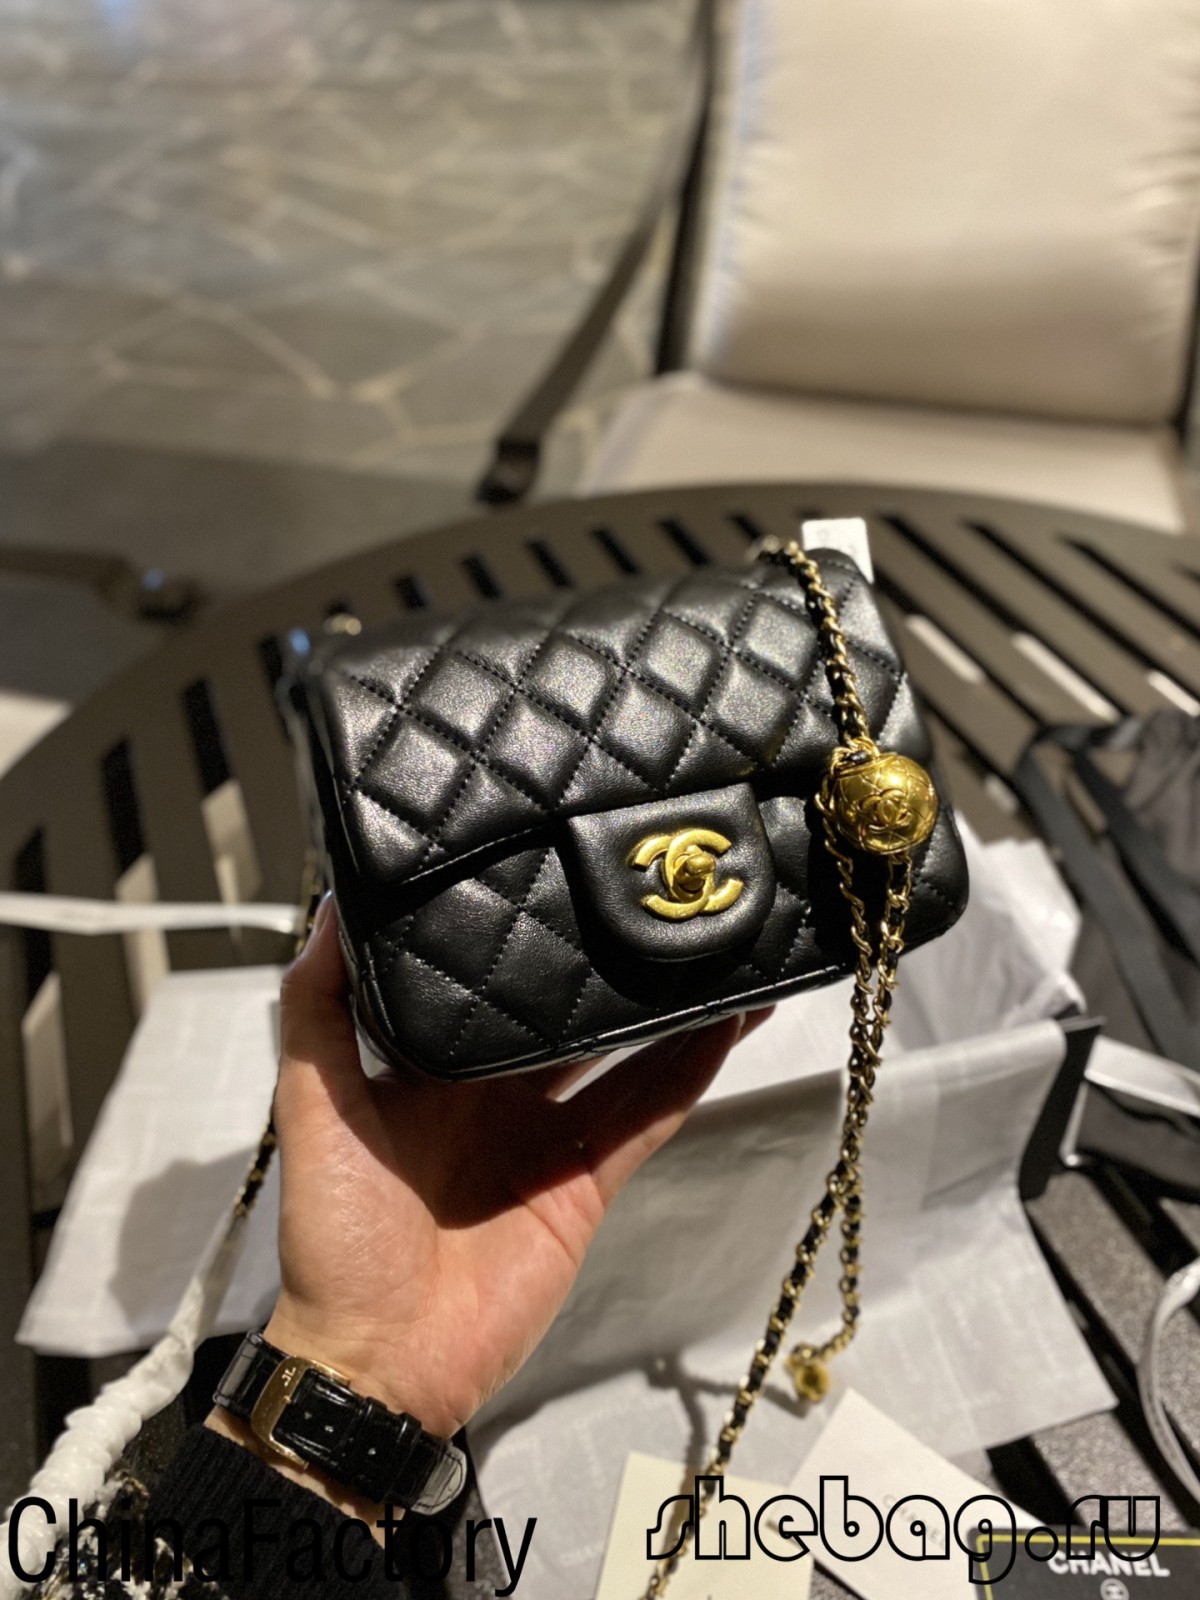 Replica della borsa 1:1 Chanel: patta classica con catena regolabile (2022 più alla moda)-Best Quality Fake Louis Vuitton Bag Online Store, Replica designer bag ru